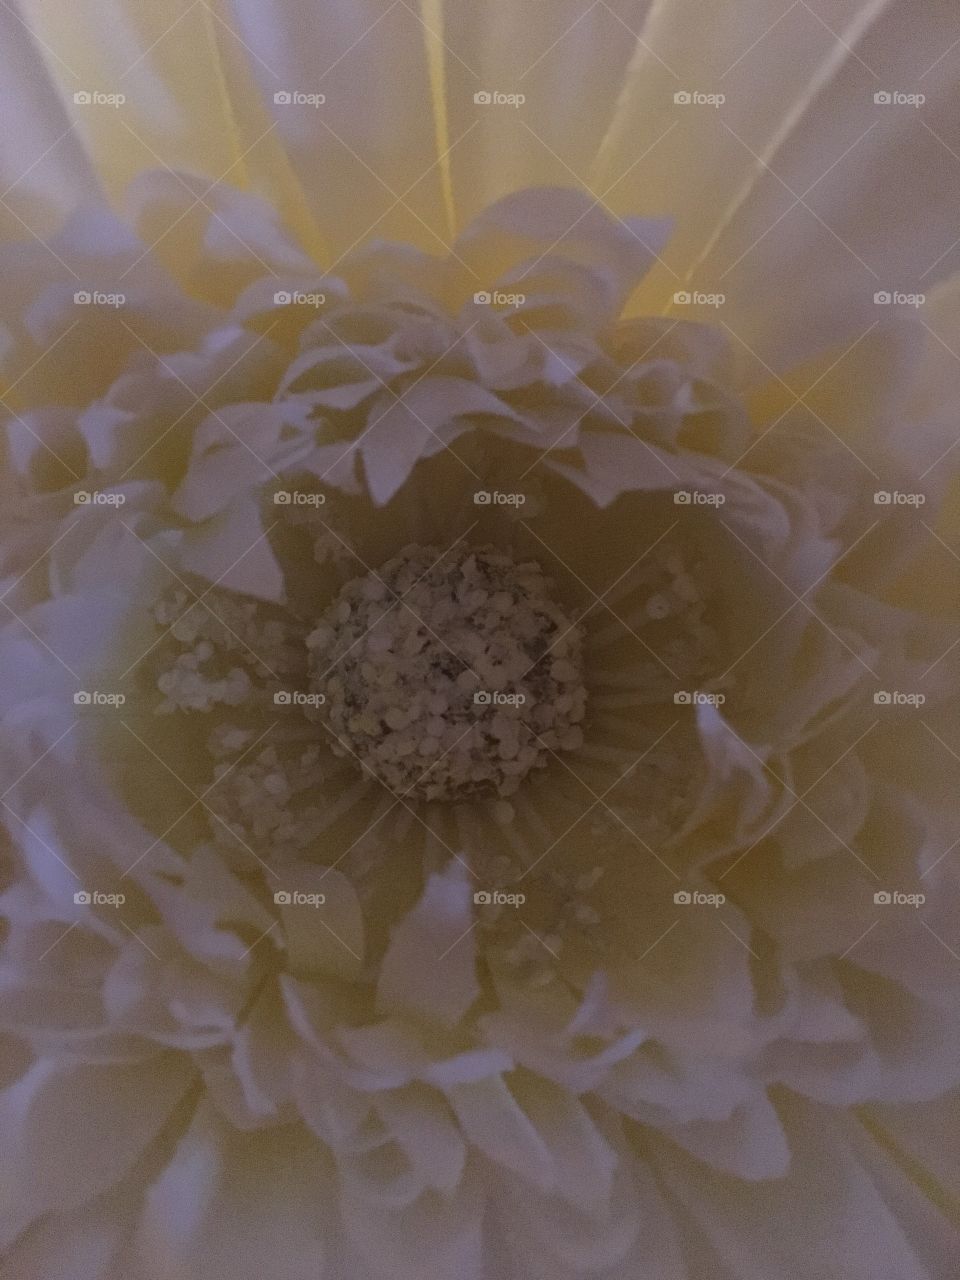 Center of a margarita flower